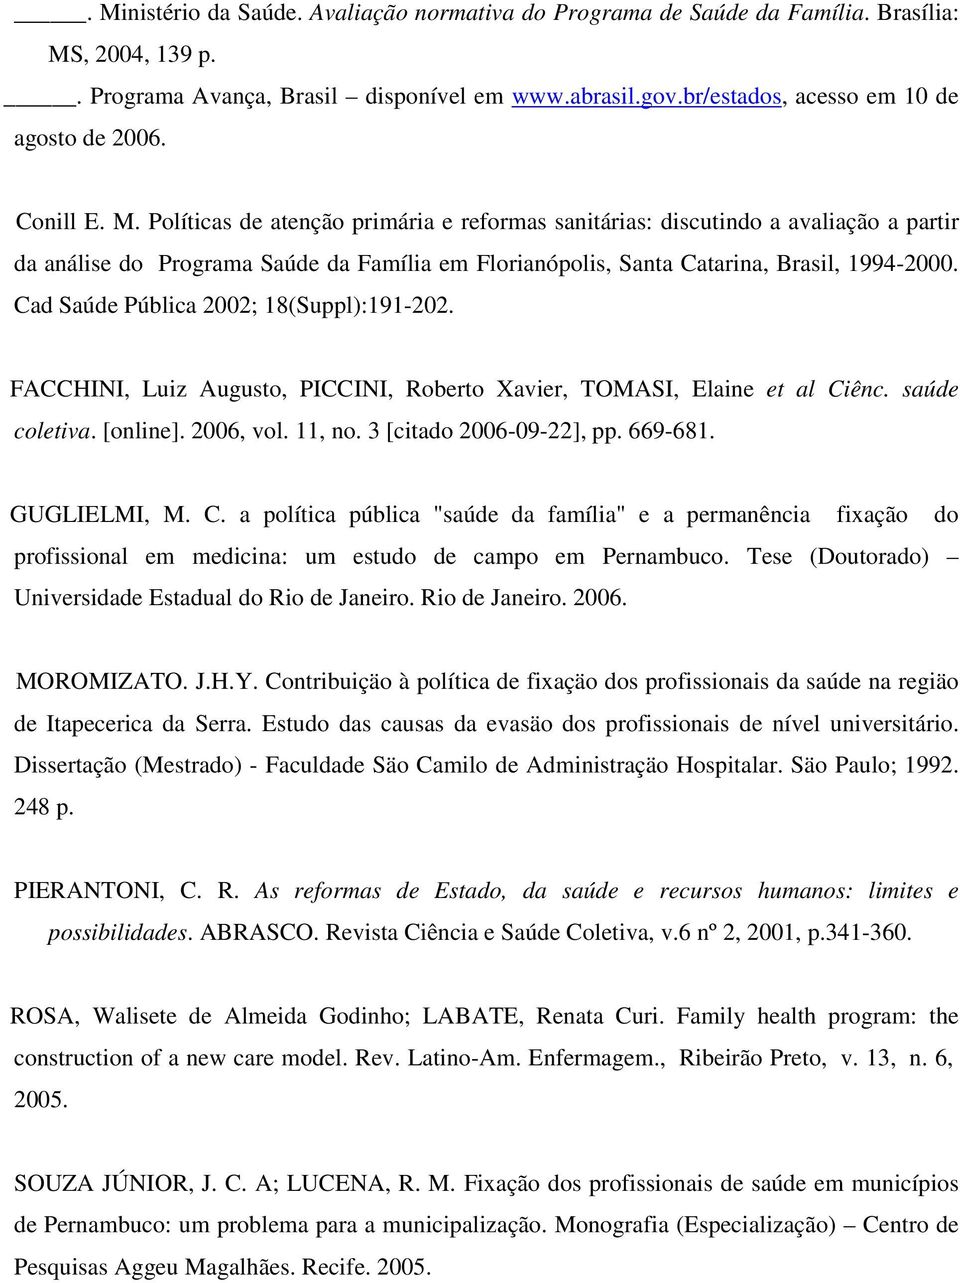 Políticas de atenção primária e reformas sanitárias: discutindo a avaliação a partir da análise do Programa Saúde da Família em Florianópolis, Santa Catarina, Brasil, 1994-2000.